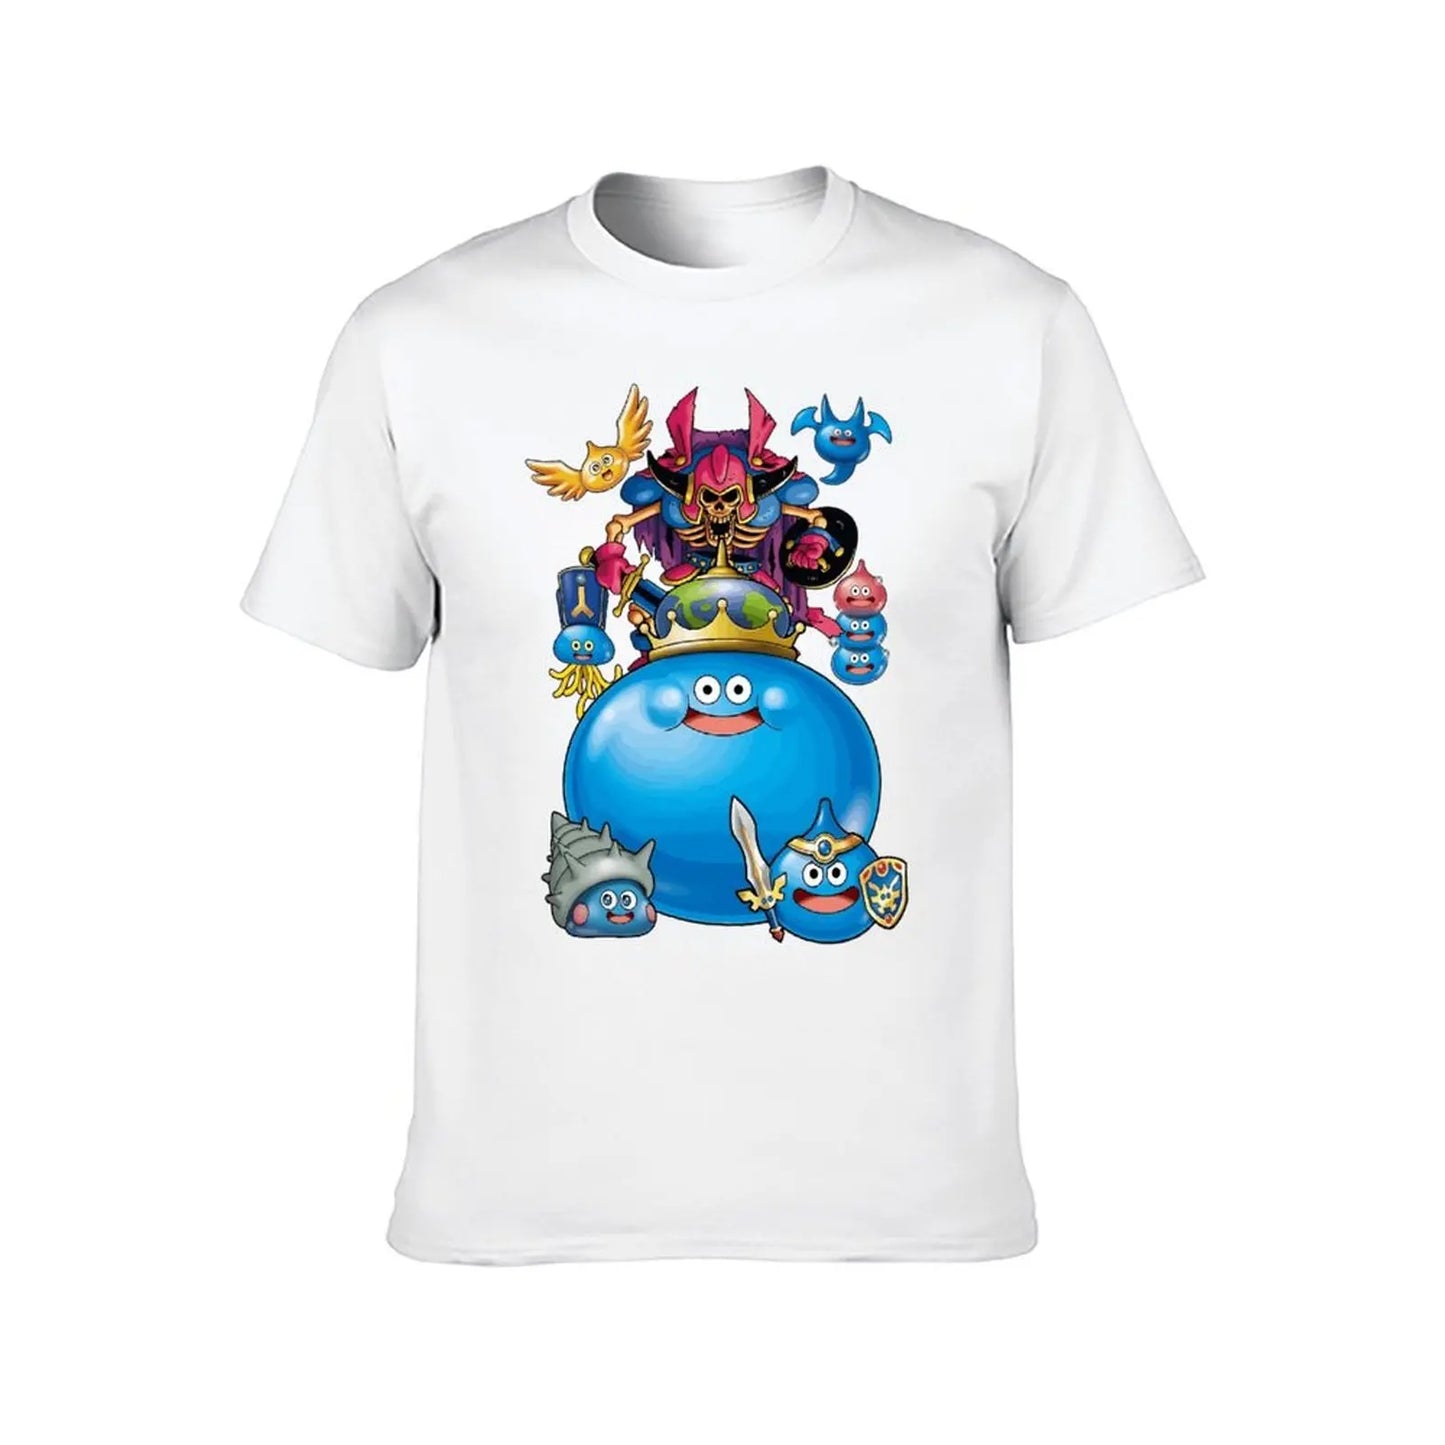 Dragon Warrior Slimes Party Dragon Quest T-shirt frais campagne haut T-shirt Premium Humor graphique Fitness taille européenne